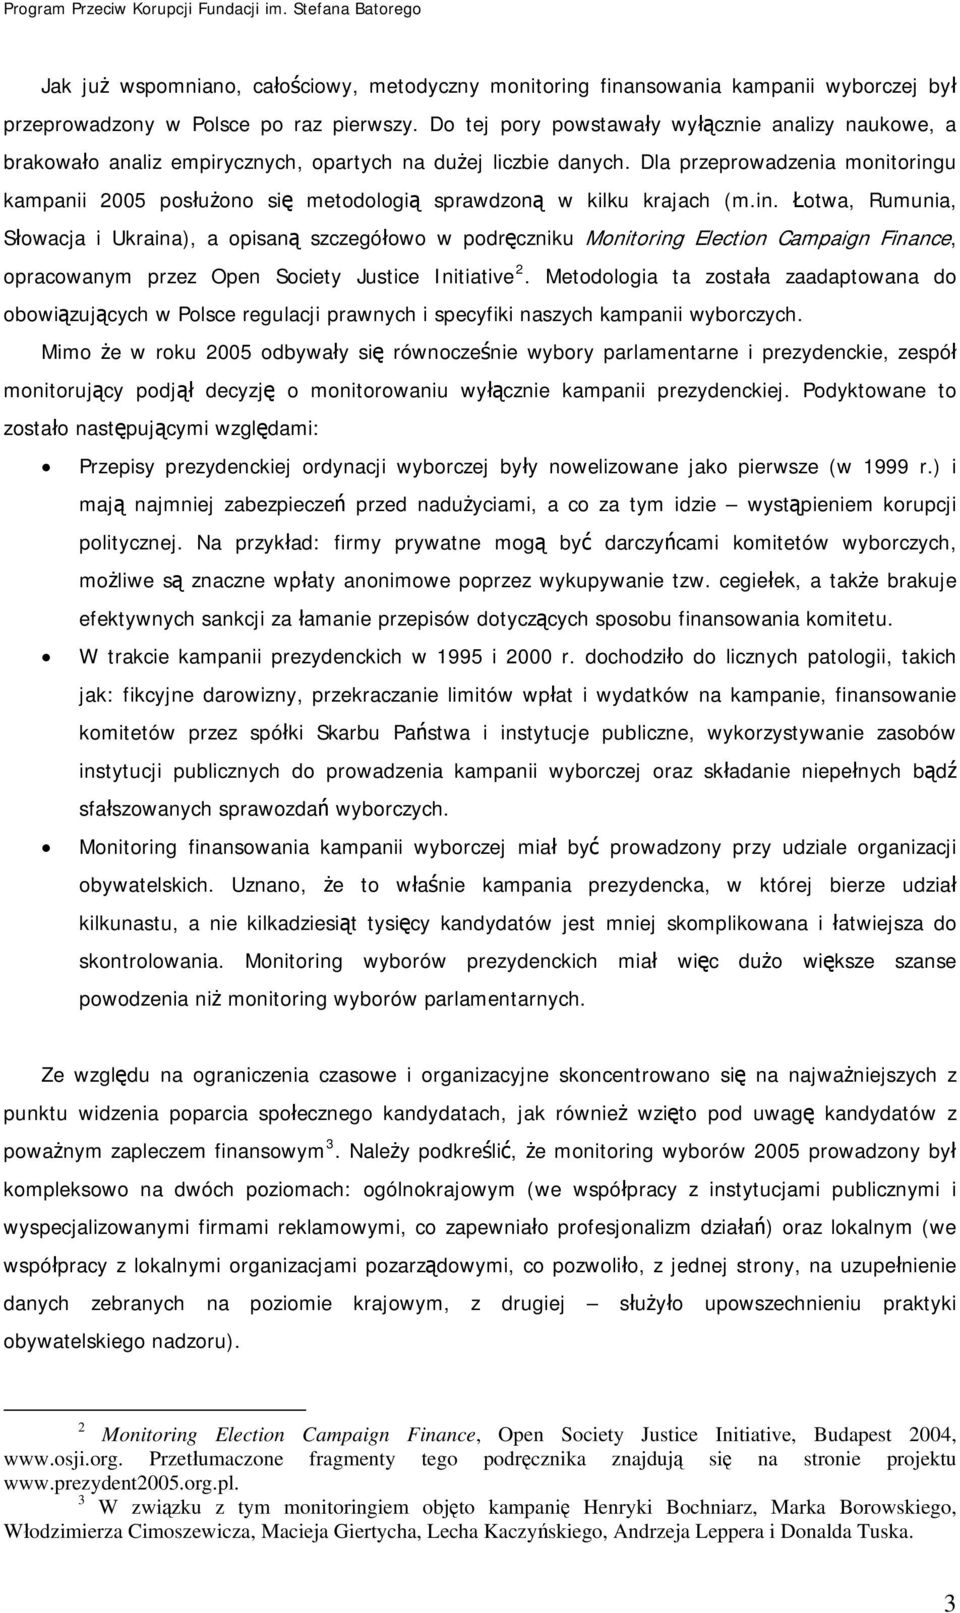 Dla przeprowadzenia monitoringu kampanii 2005 posłużono się metodologią sprawdzoną w kilku krajach (m.in. Łotwa, Rumunia, Słowacja i Ukraina), a opisaną szczegółowo w podręczniku Monitoring Election Campaign Finance, opracowanym przez Open Society Justice Initiative 2.